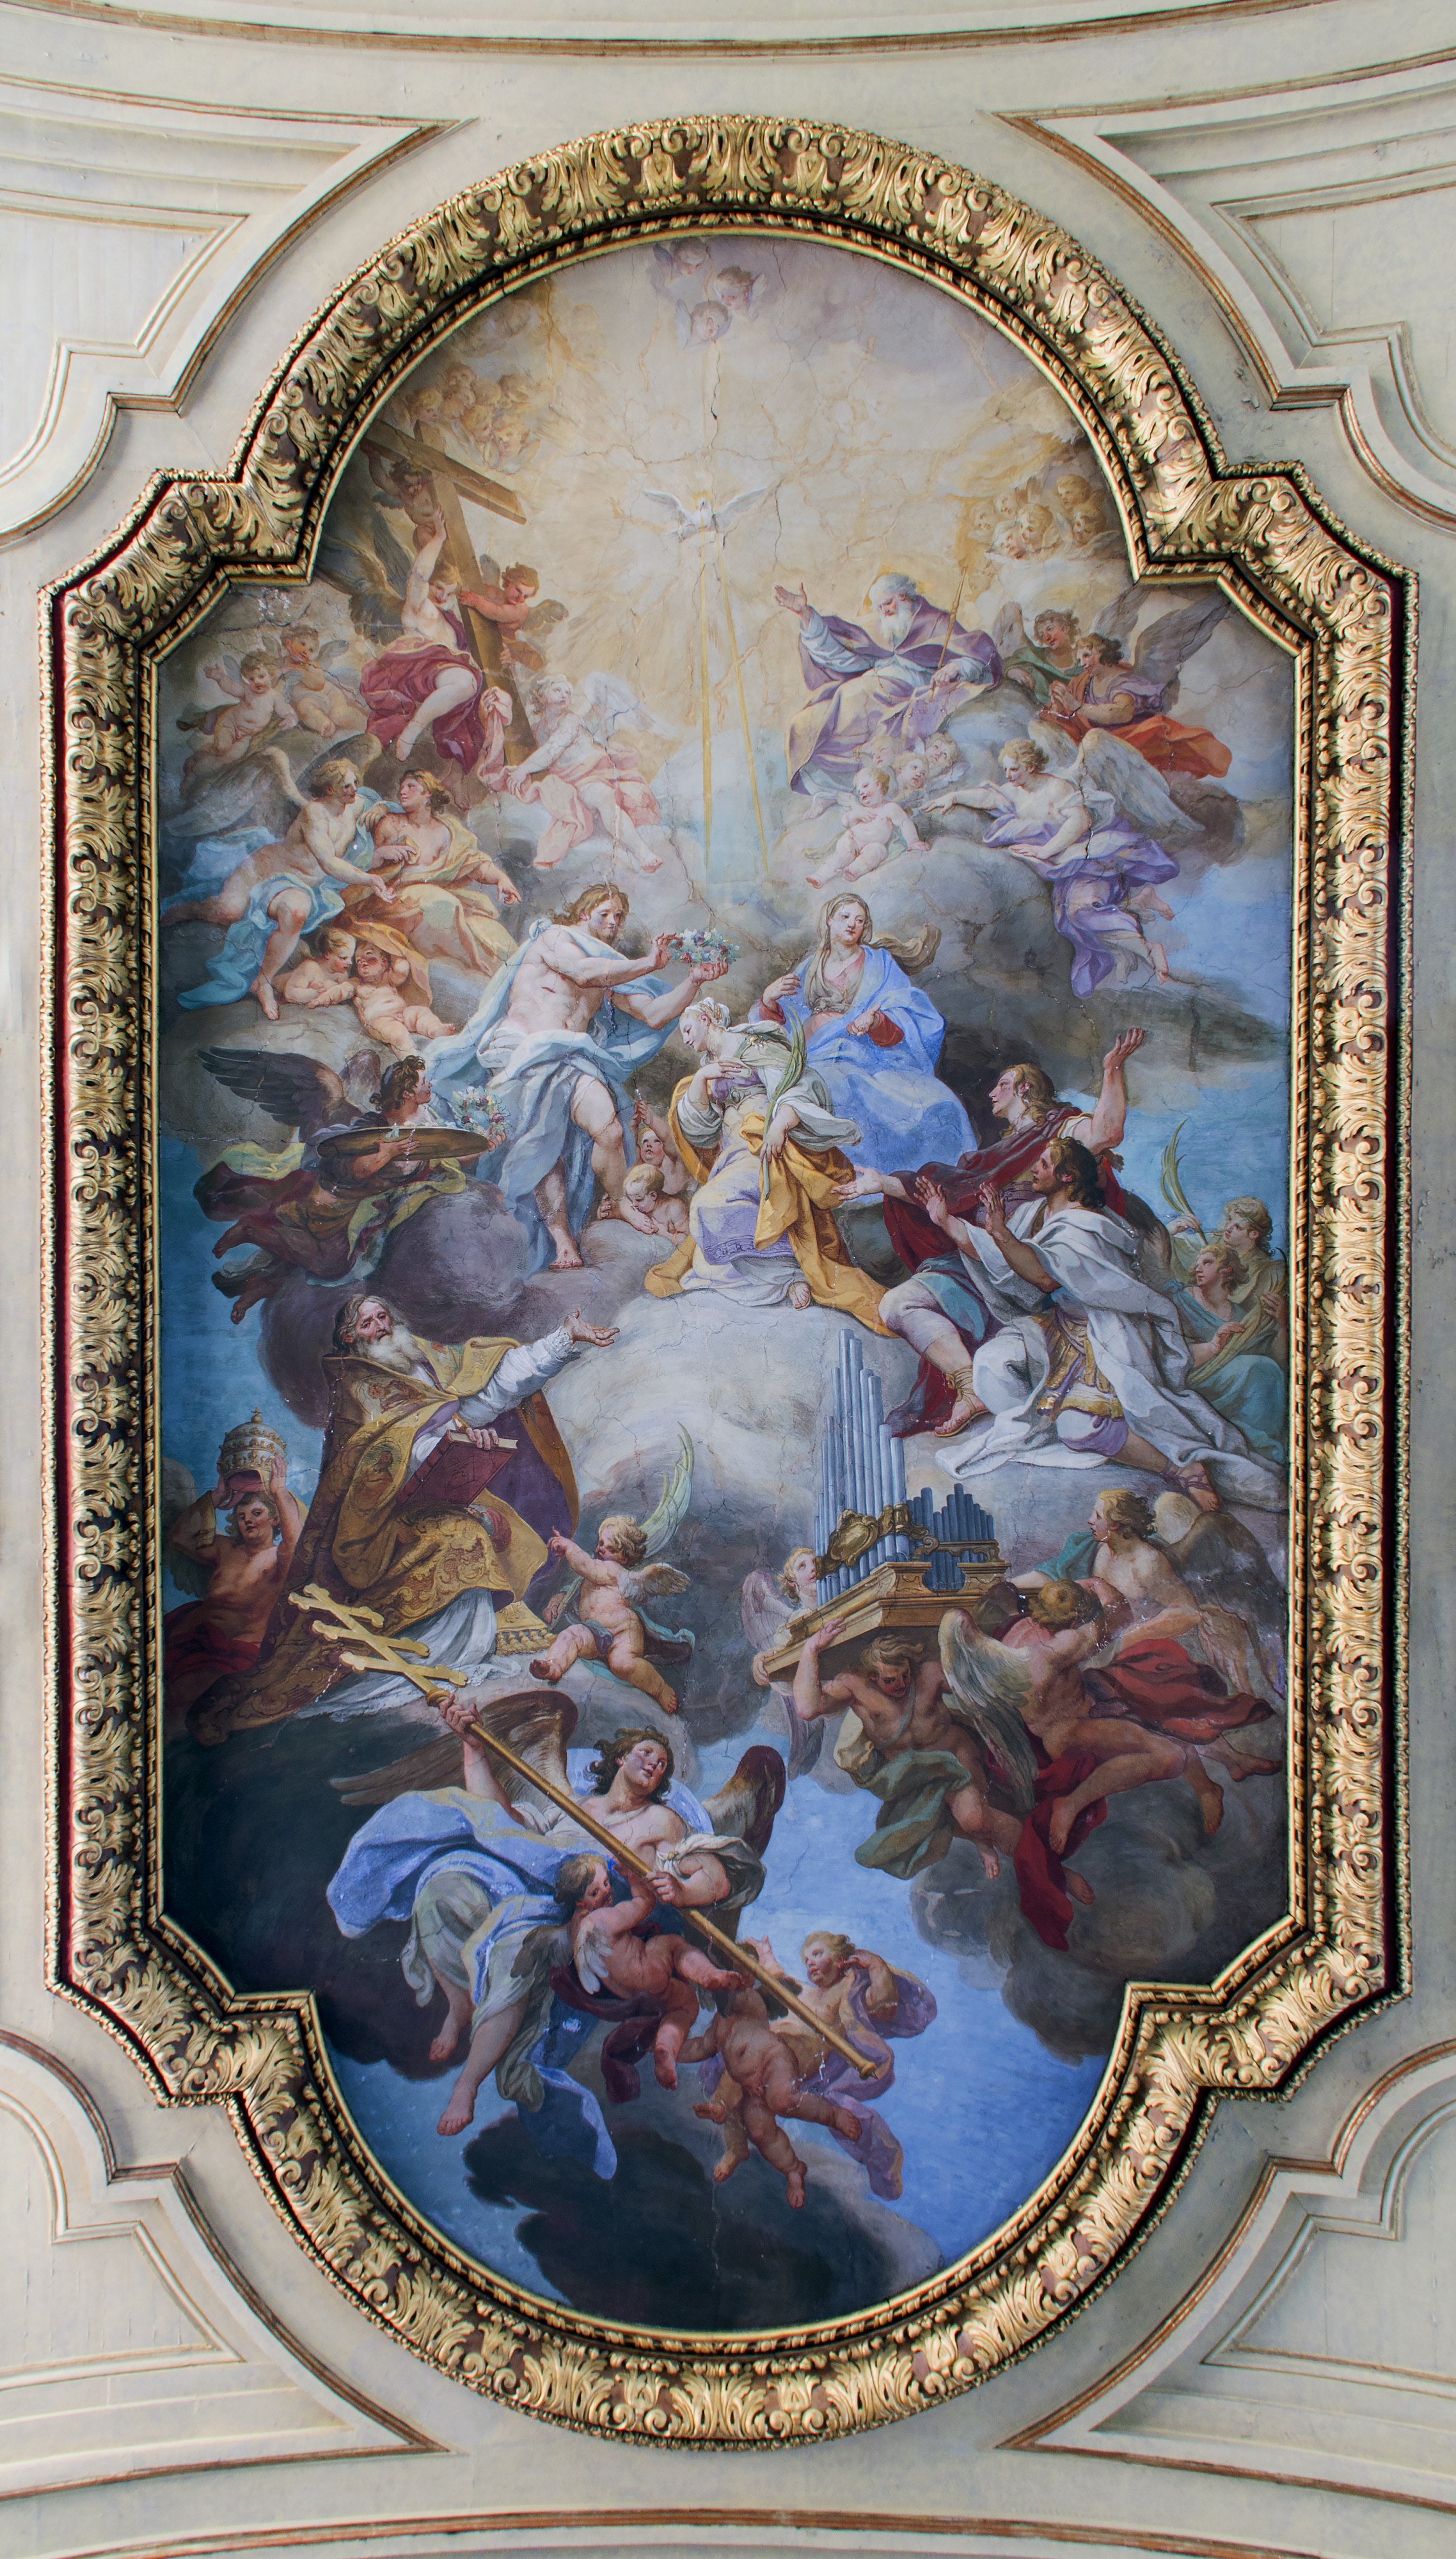 Glory of Santa Cecilia in Santa Cecilia (Rome)